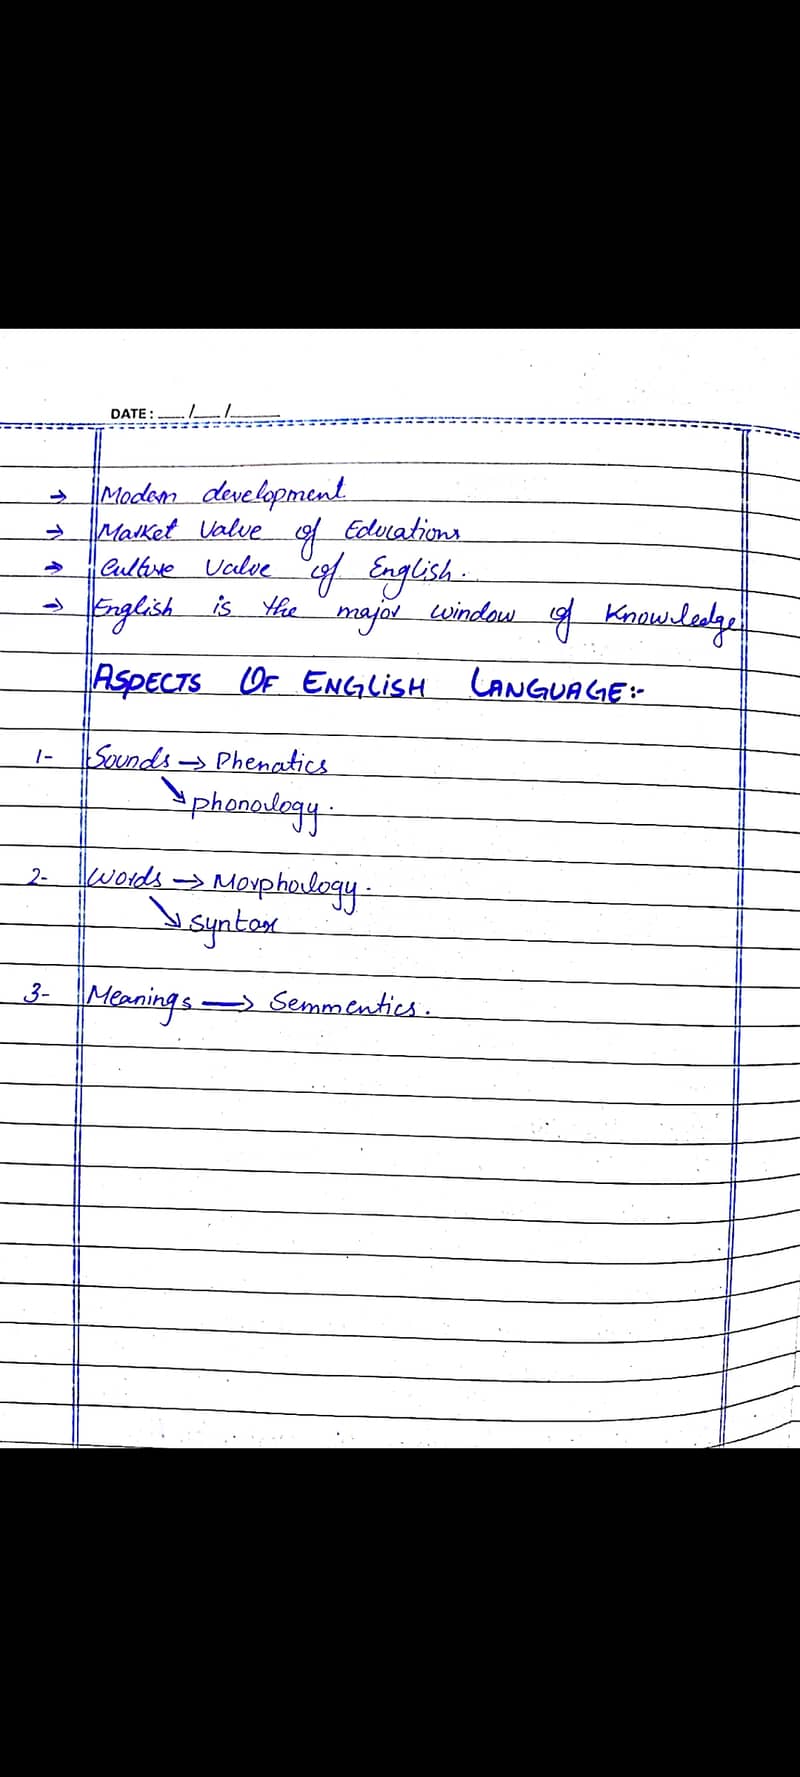 Handwritten/Ms word Assignment 4